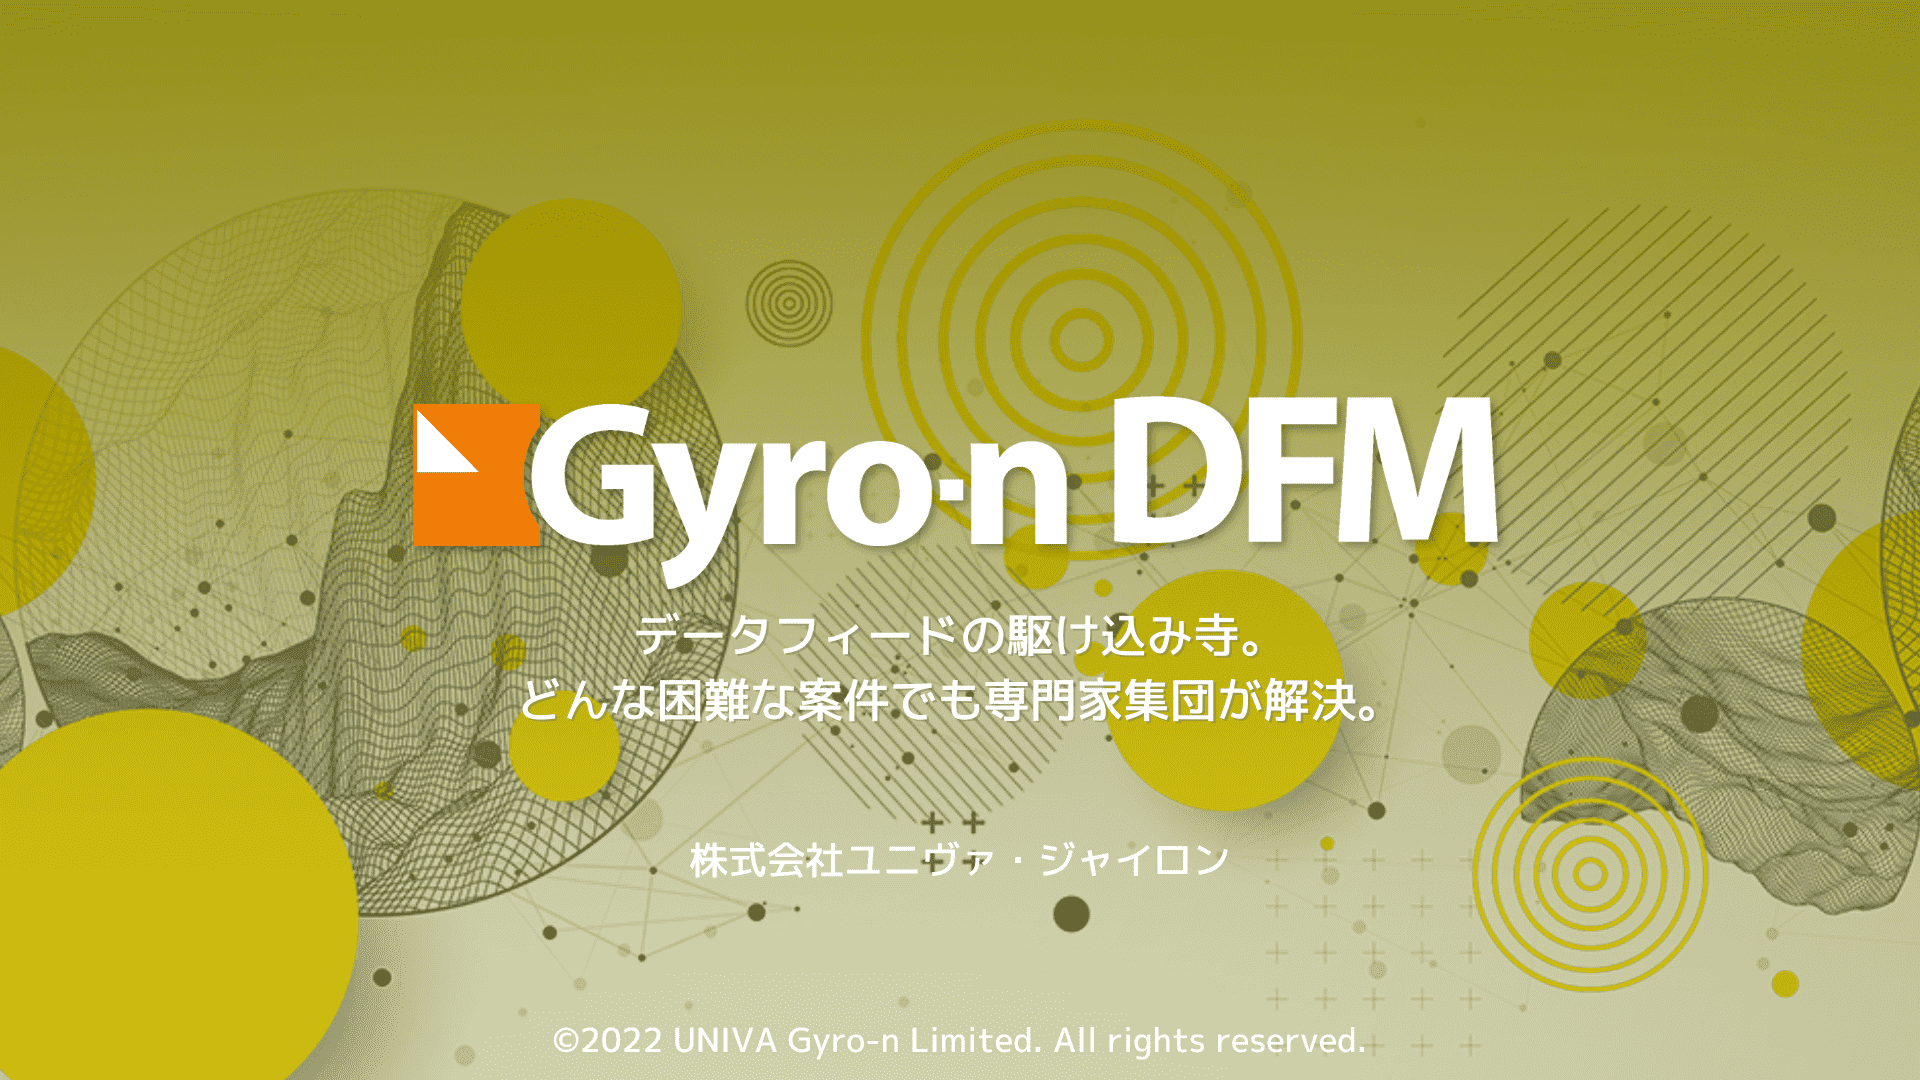 Gyro-n DFM データフィードの駆け込み寺。どんな困難な案件でも専門家集団が解決。